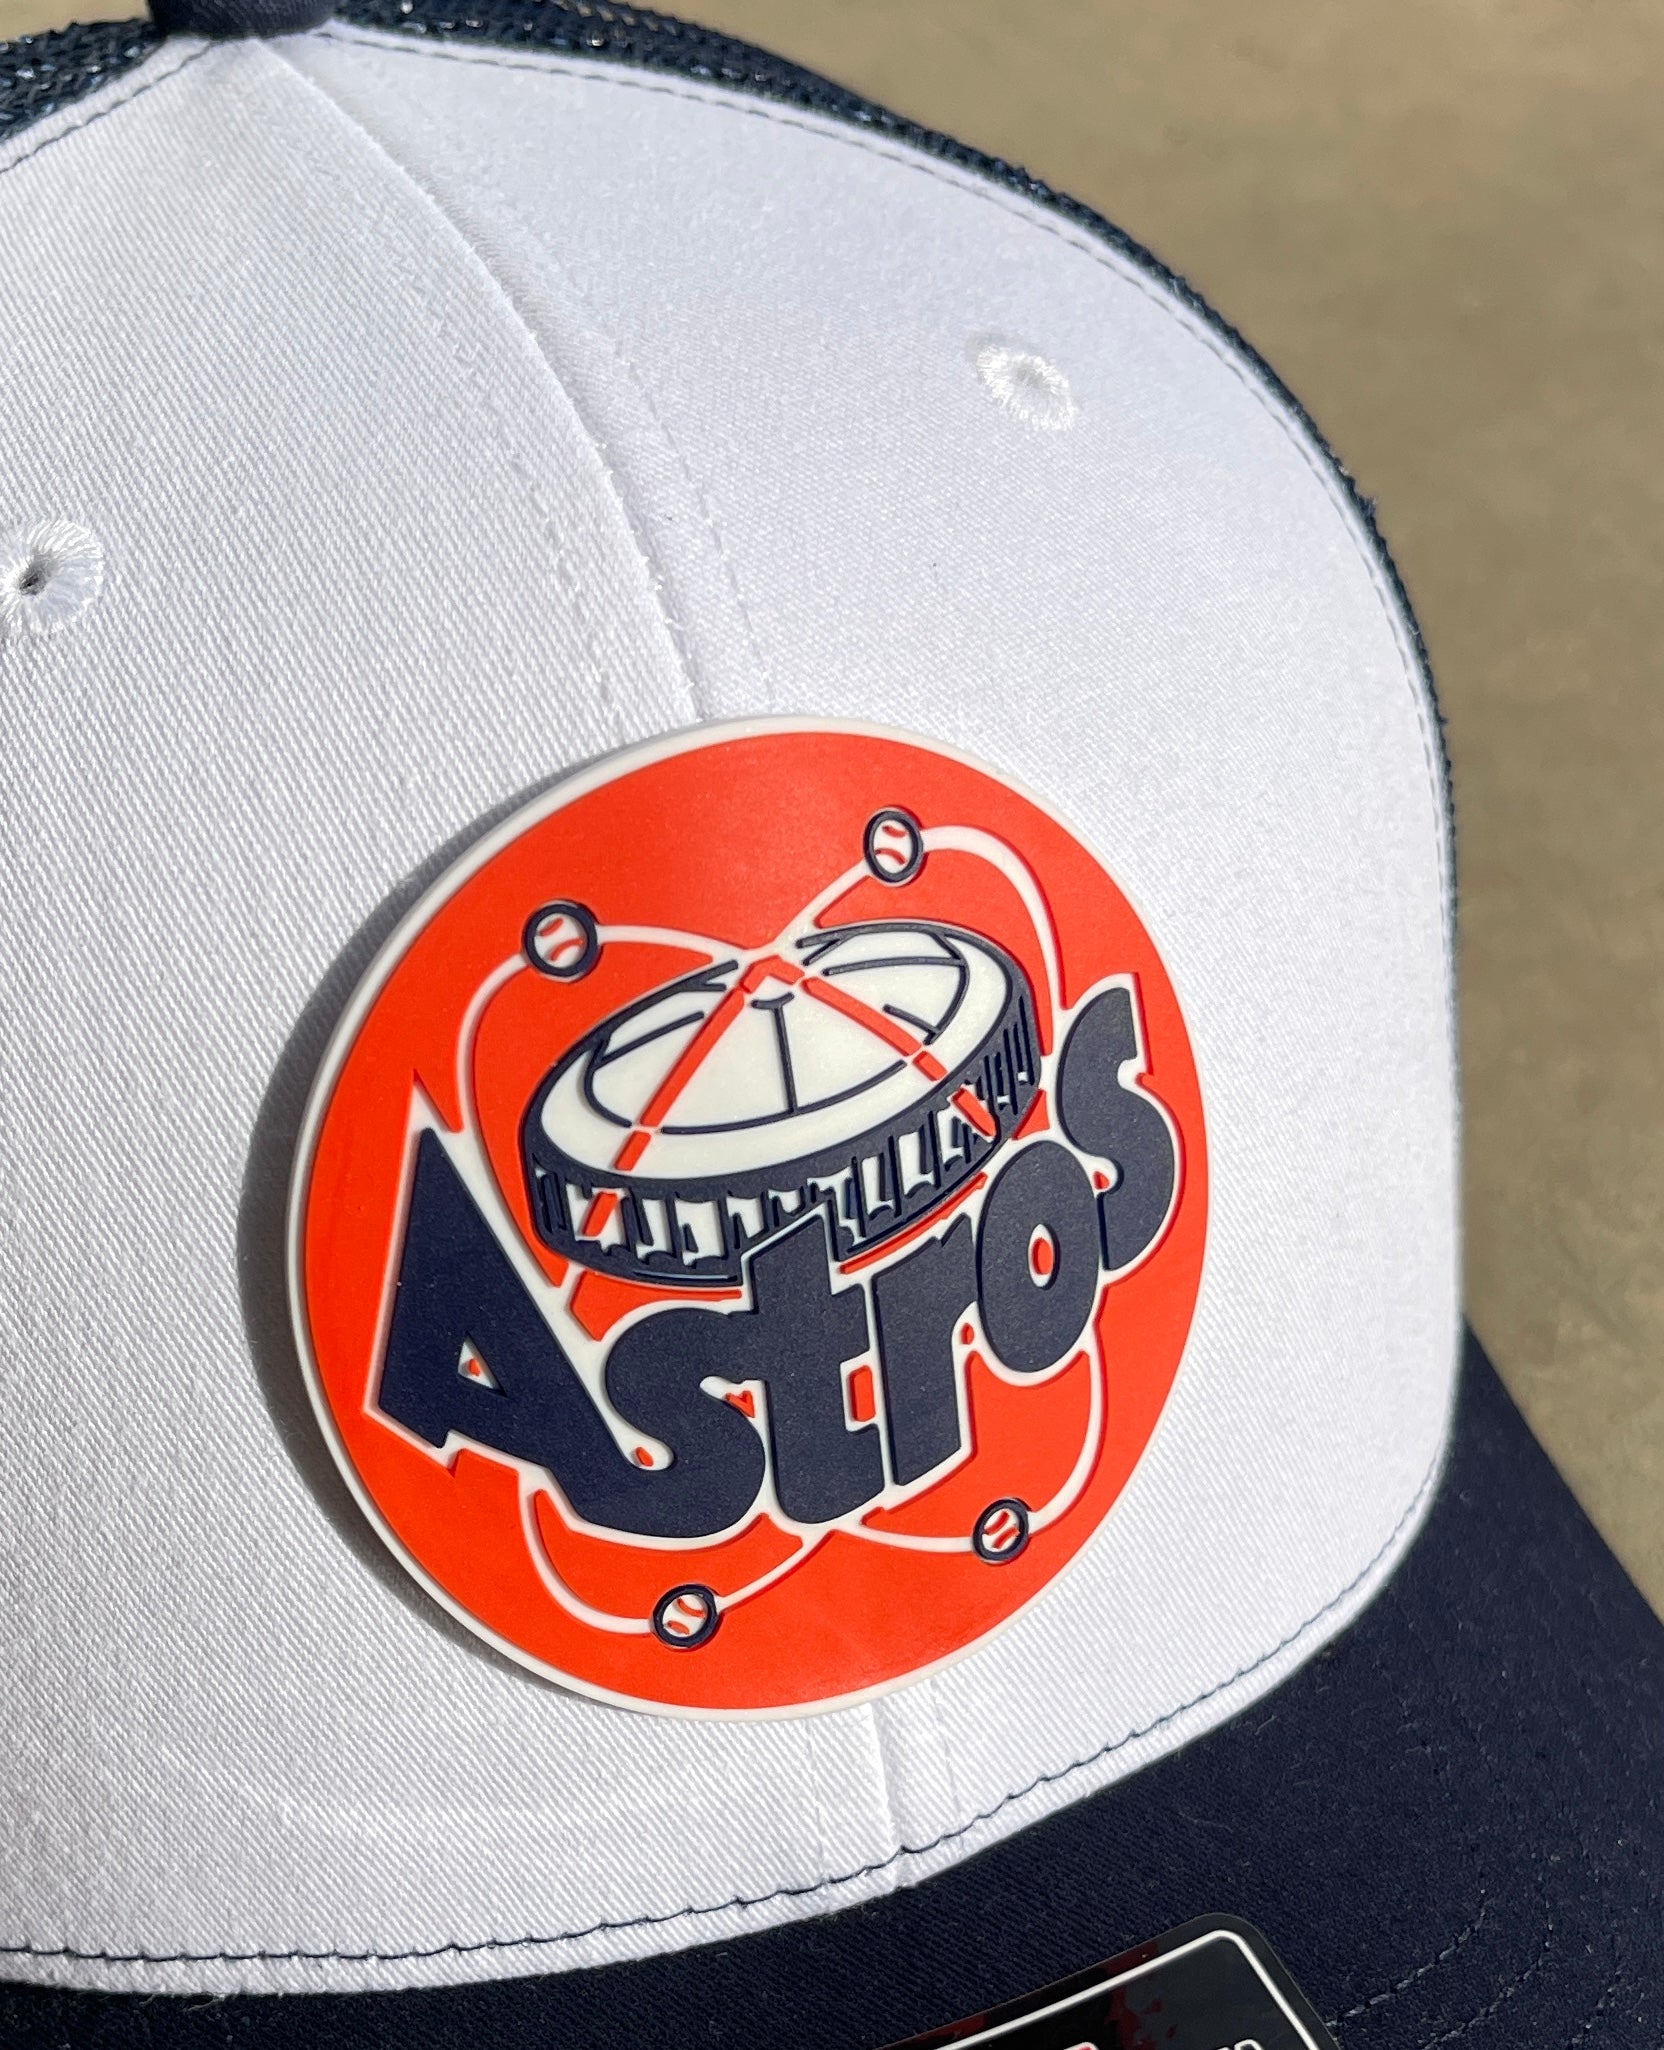 Astros Retro Astrodome 3D Snapback Trucker Hat- Charcoal/ White - Ten Gallon Hat Co.